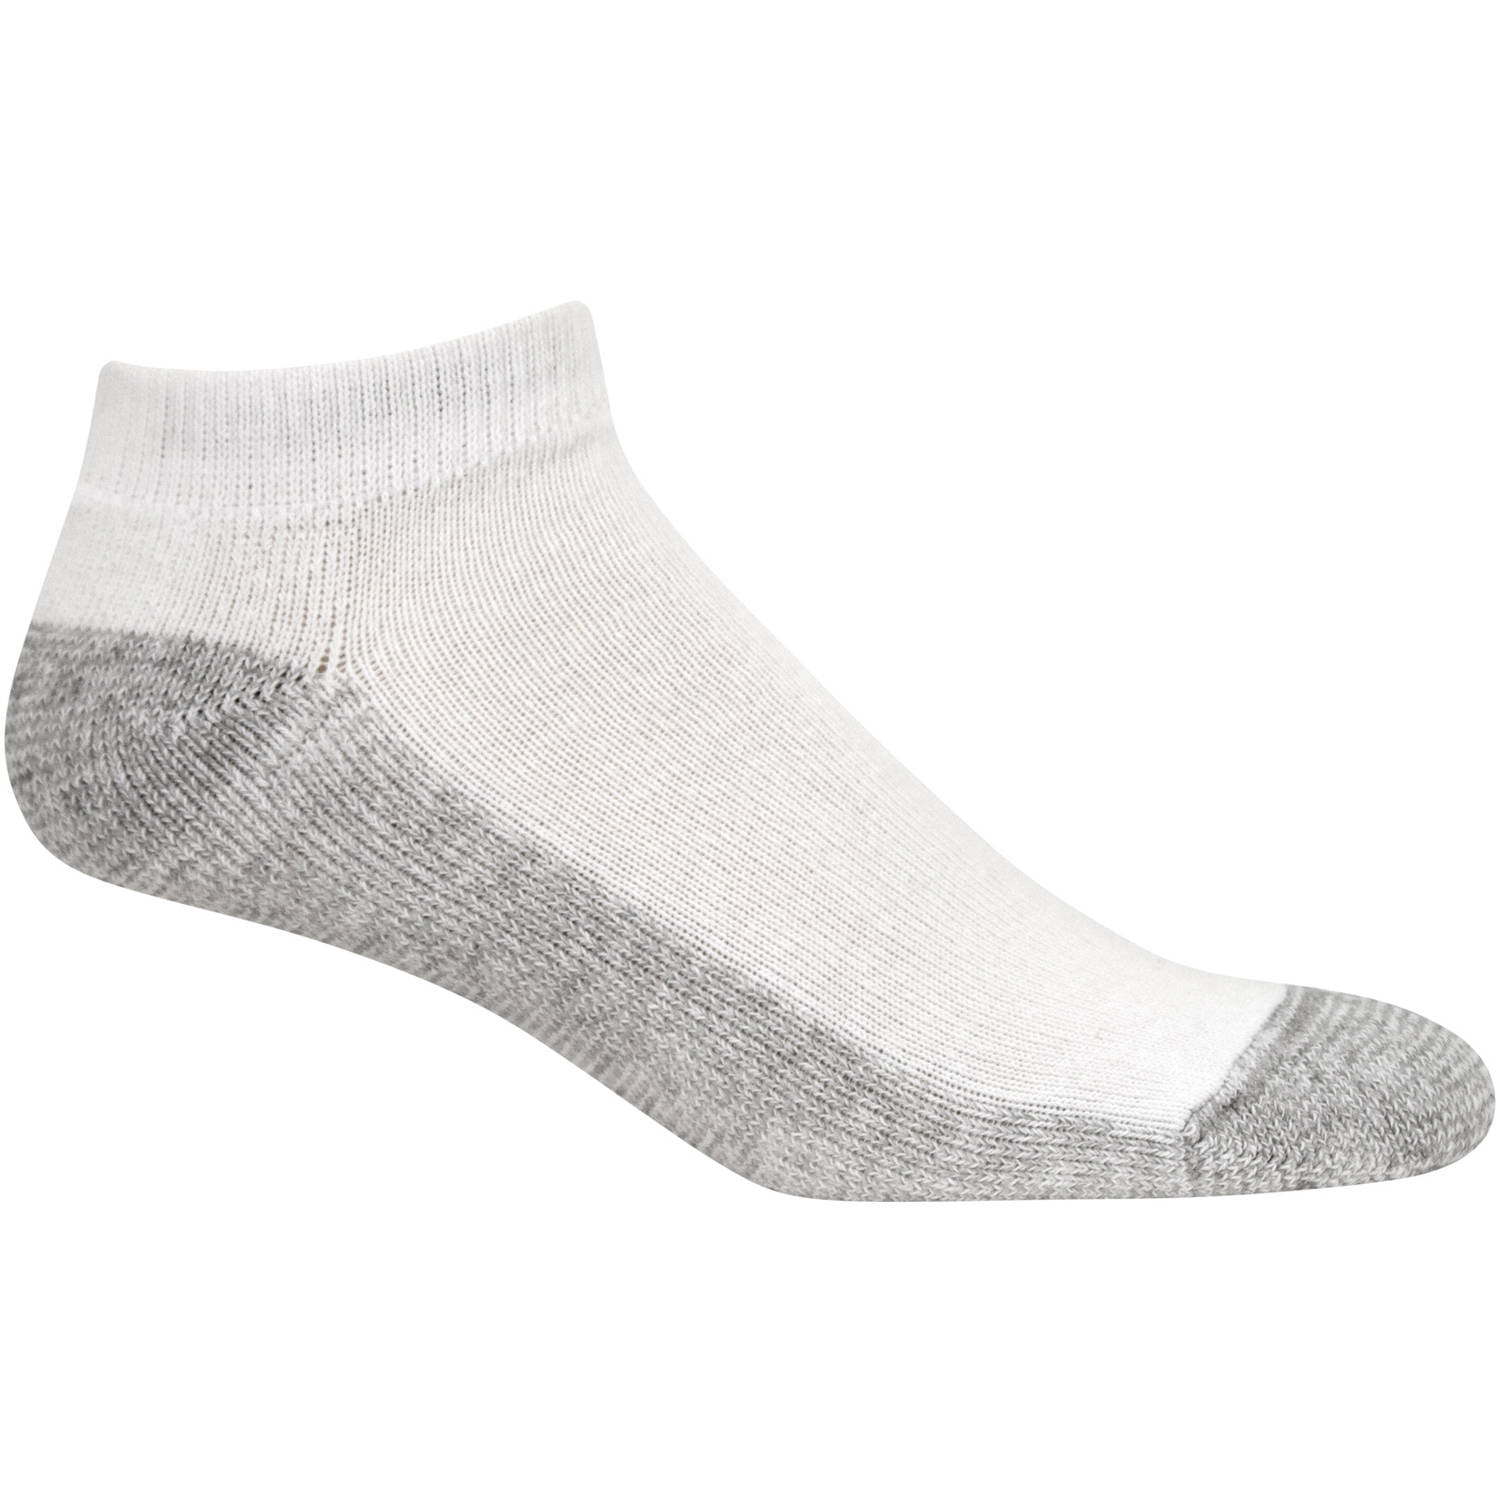 Men's Premium Low Cut Socks 6-Pack - Walmart.com